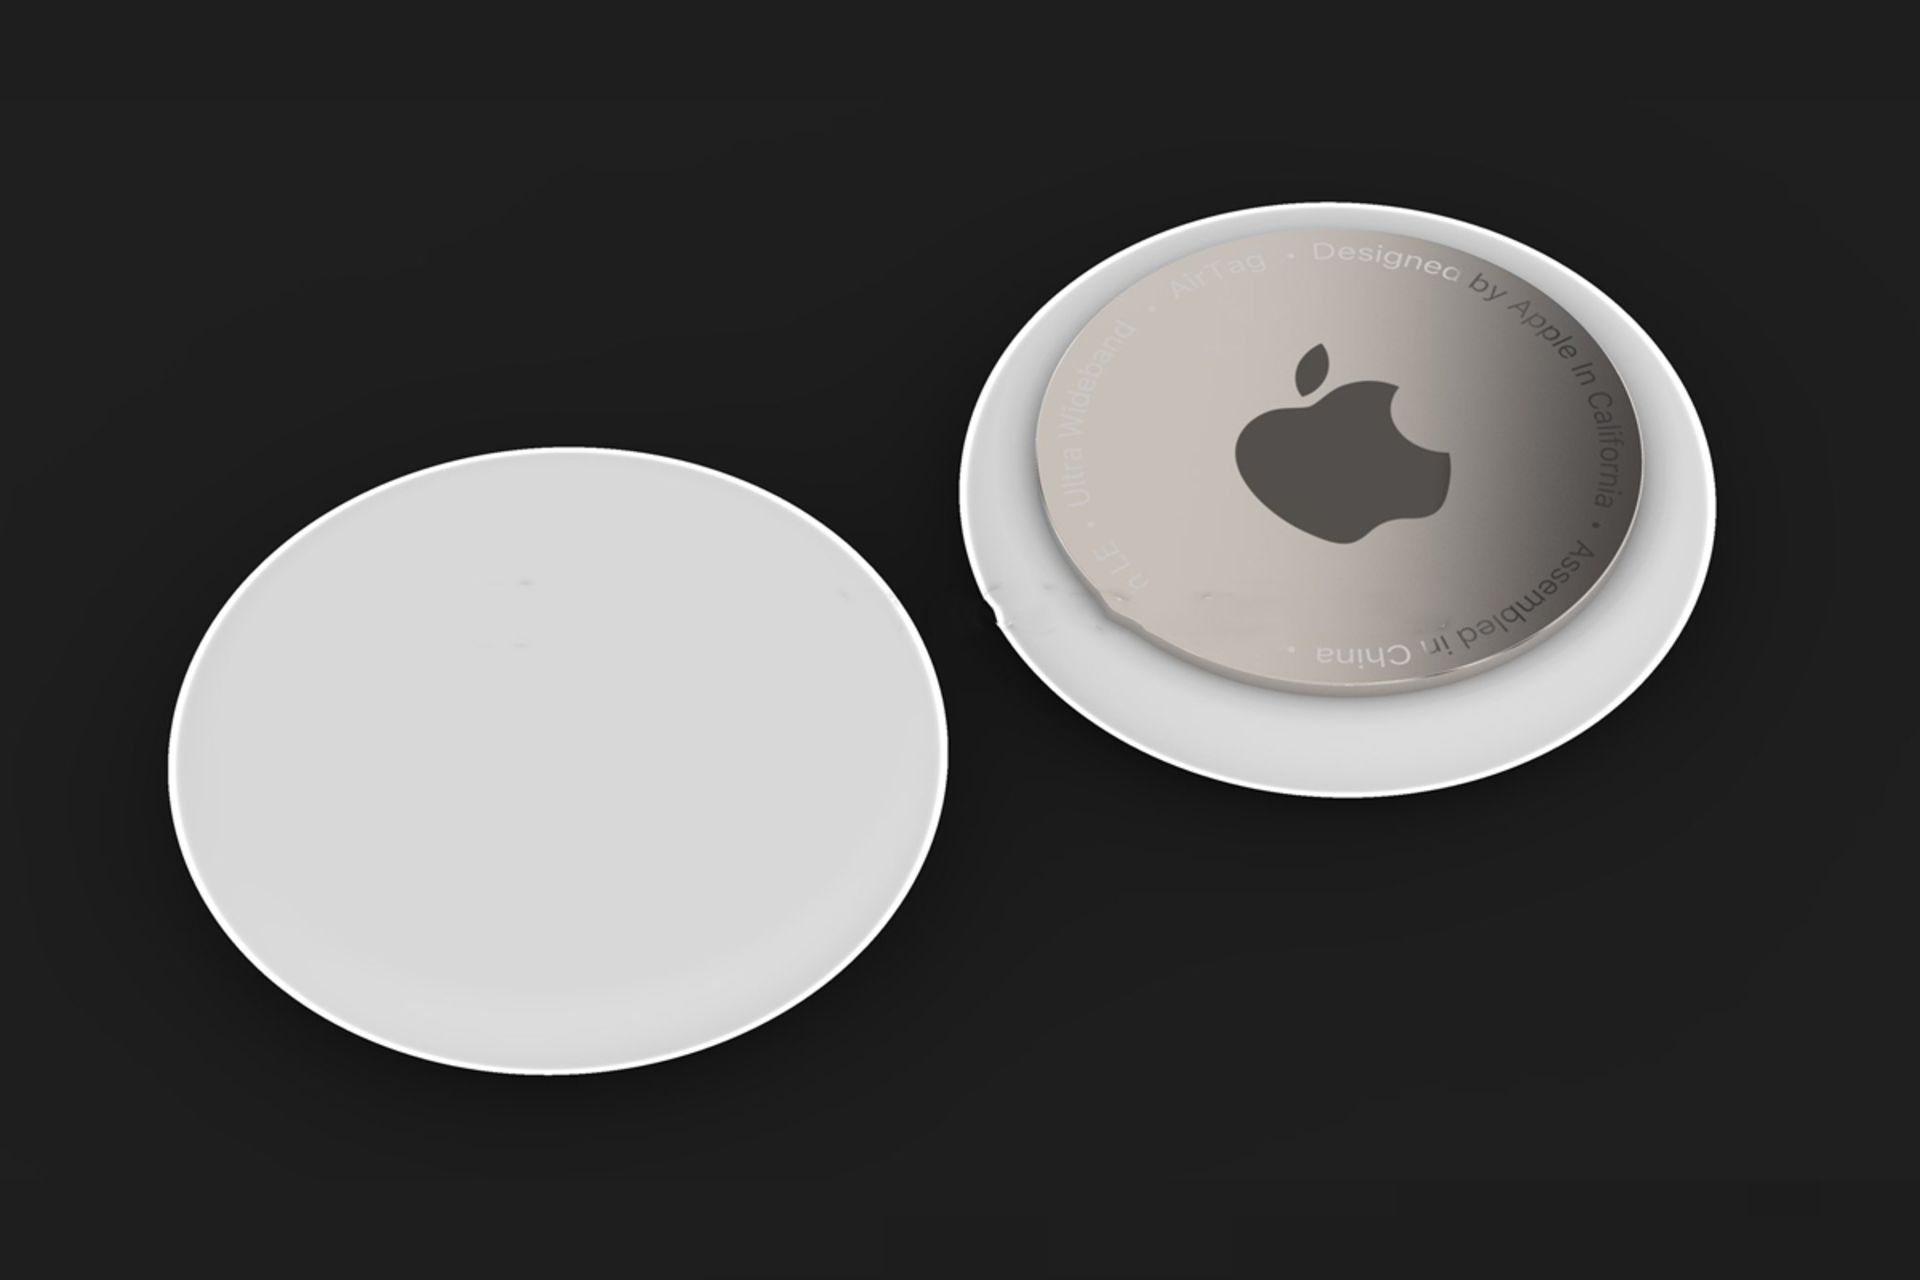 ایرتگز اپل / Apple AirTags از نمای جلو و پشت رندر غیررسمی